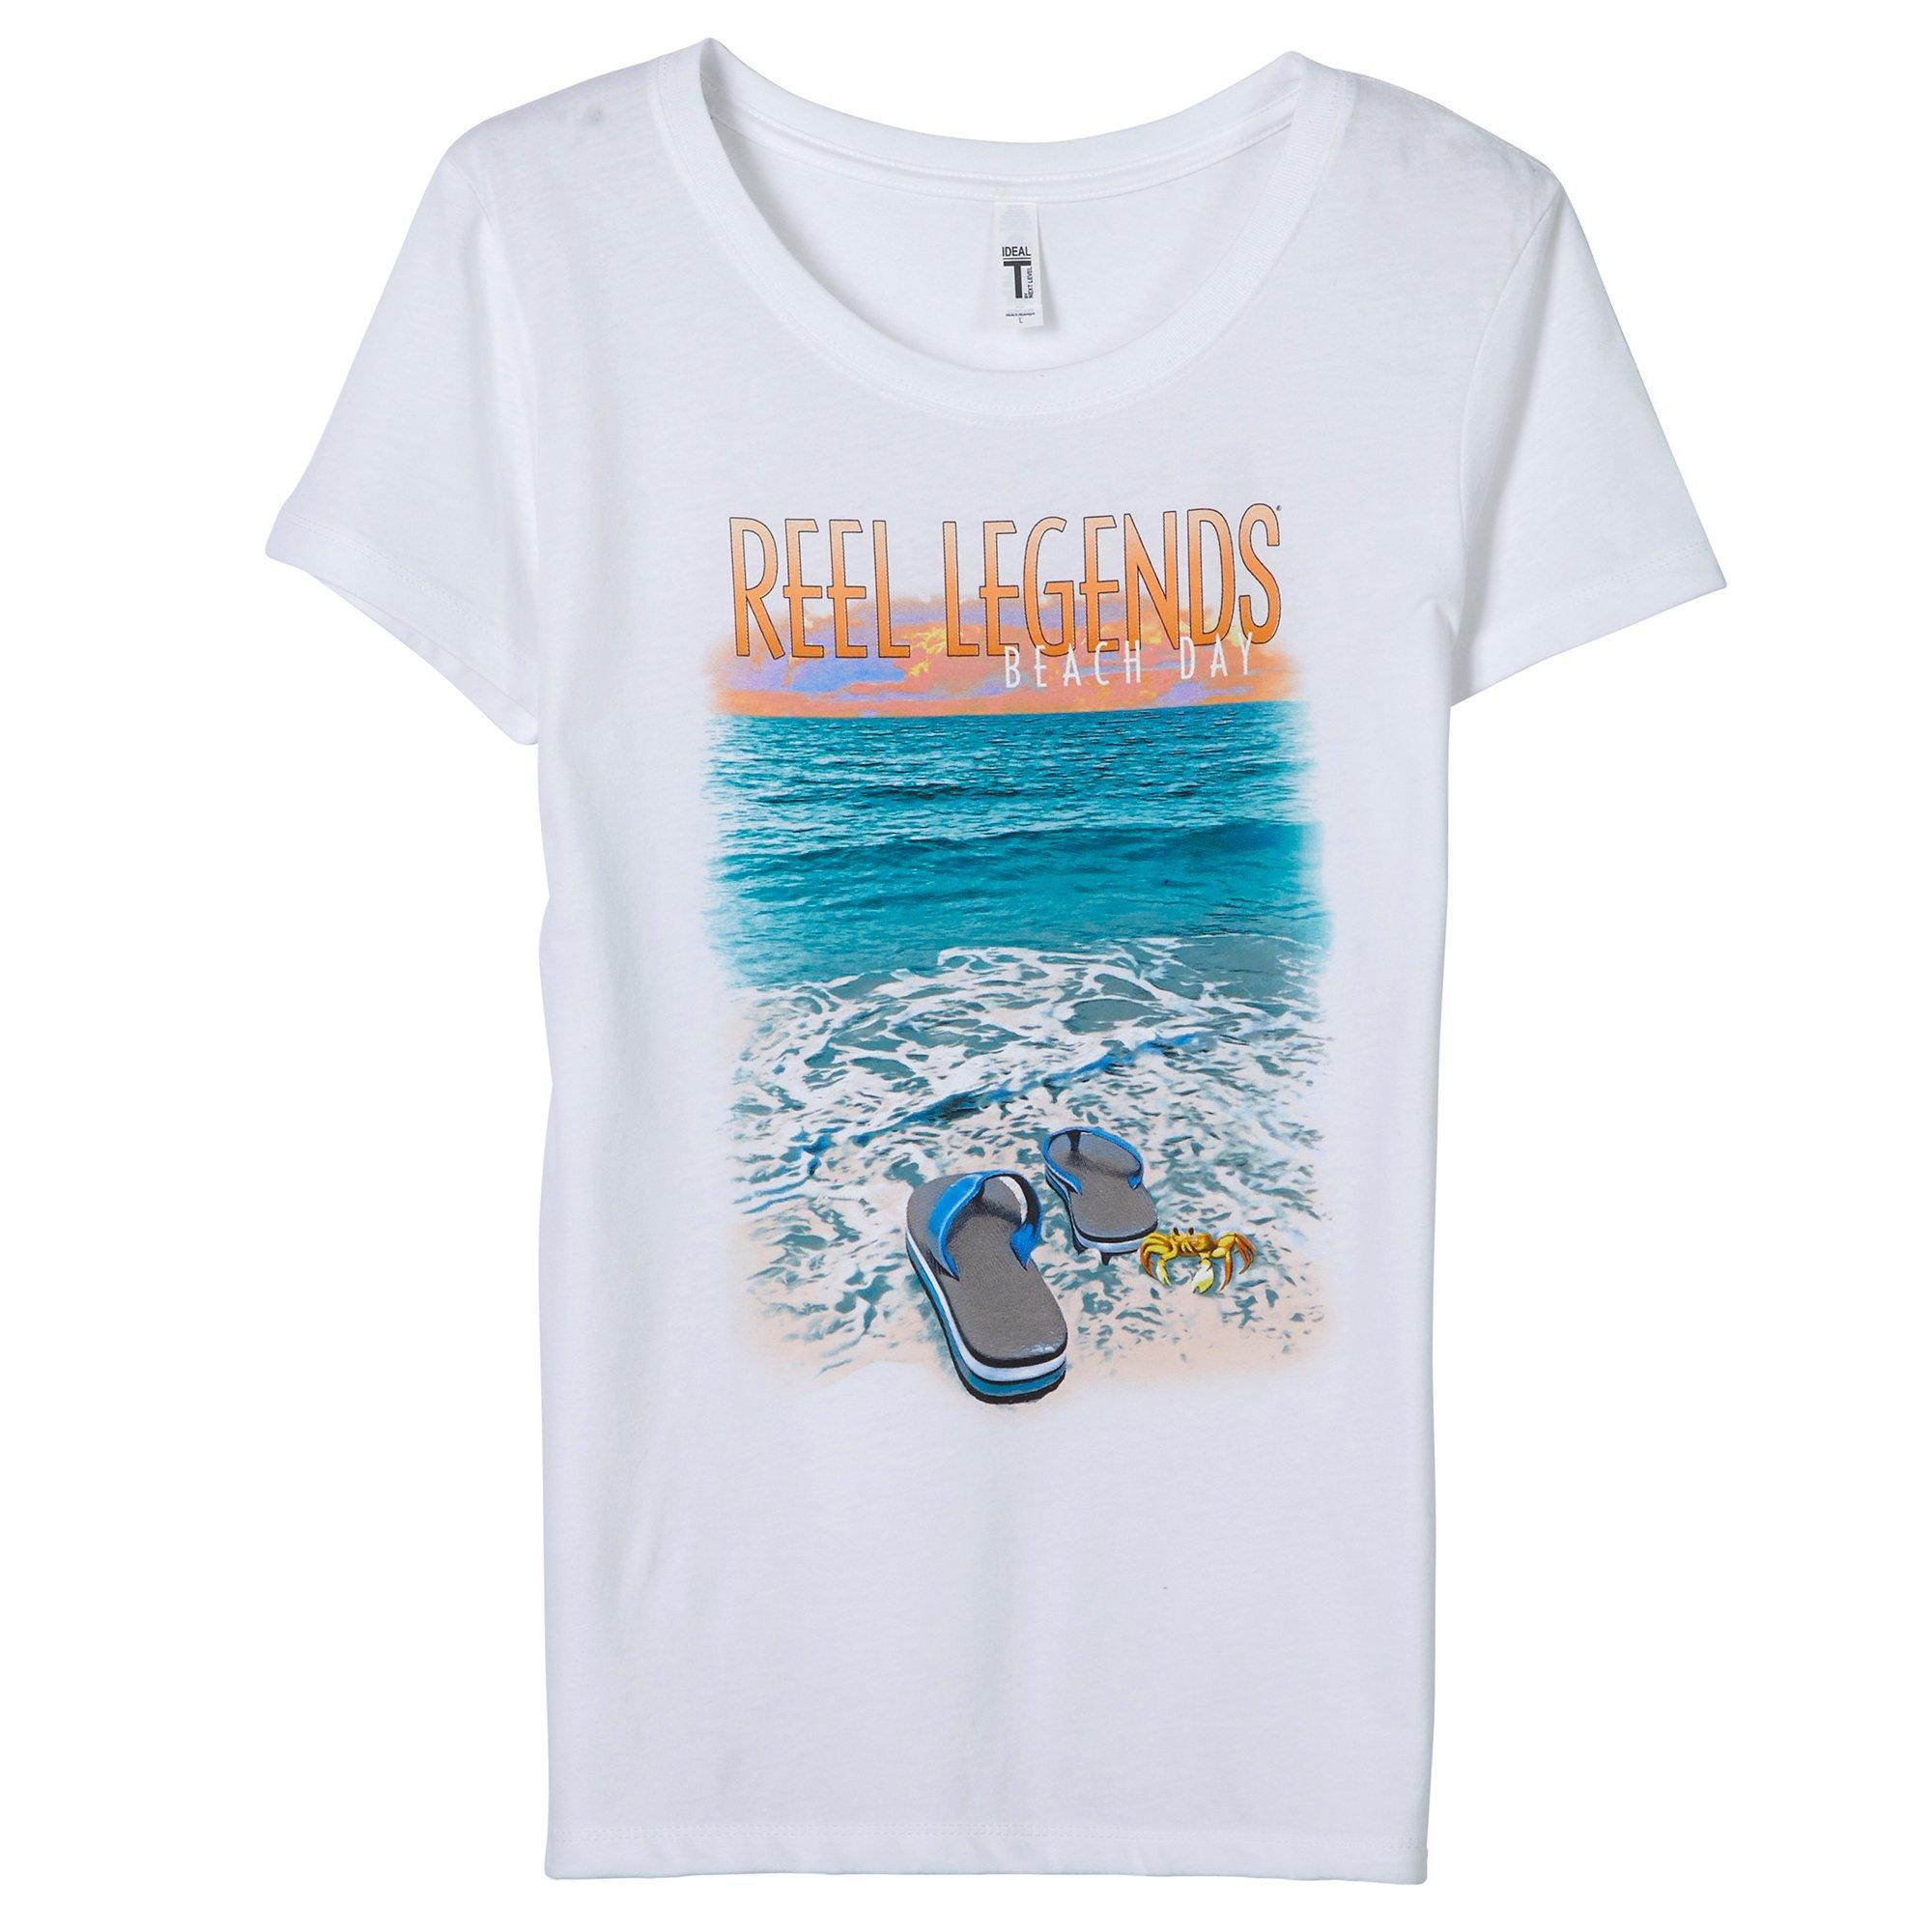 Reel Legends Womens Flip Flop Beach Short Sleeve Shirt - White - Medium